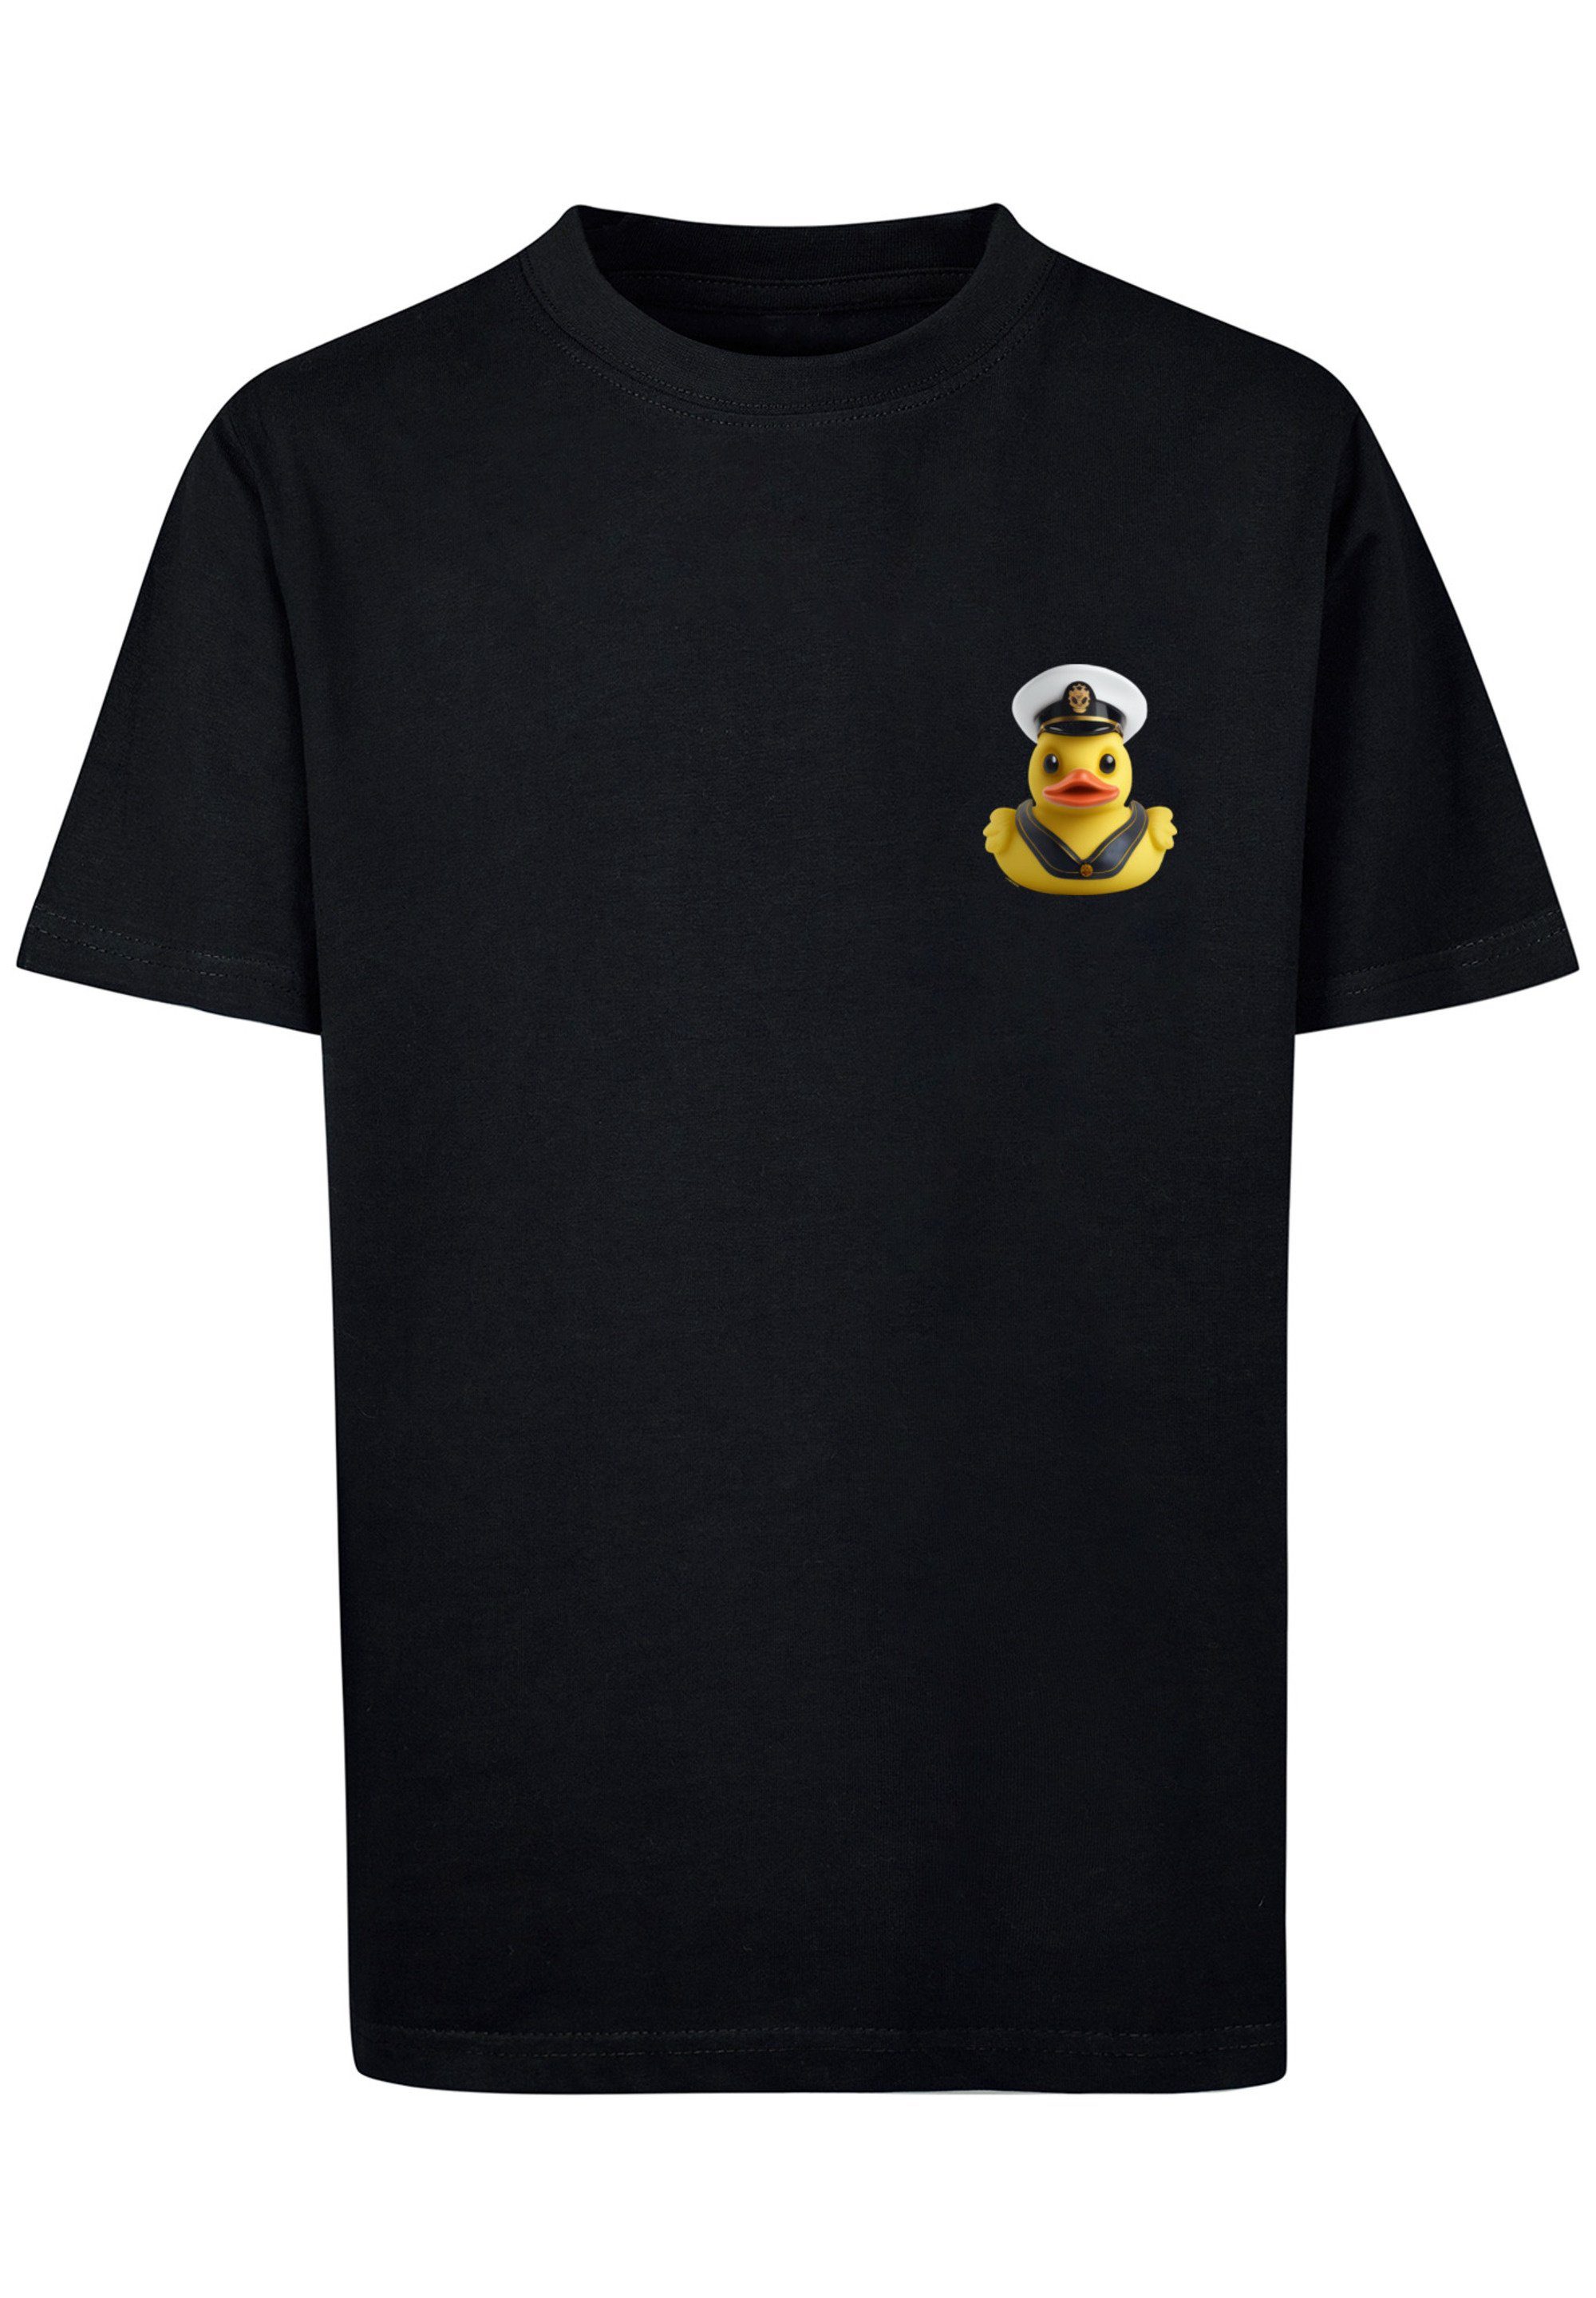 F4NT4STIC T-Shirt Rubber Duck 145 ist und Das Captain groß Print, Größe 145/152 Model UNISEX cm TEE trägt